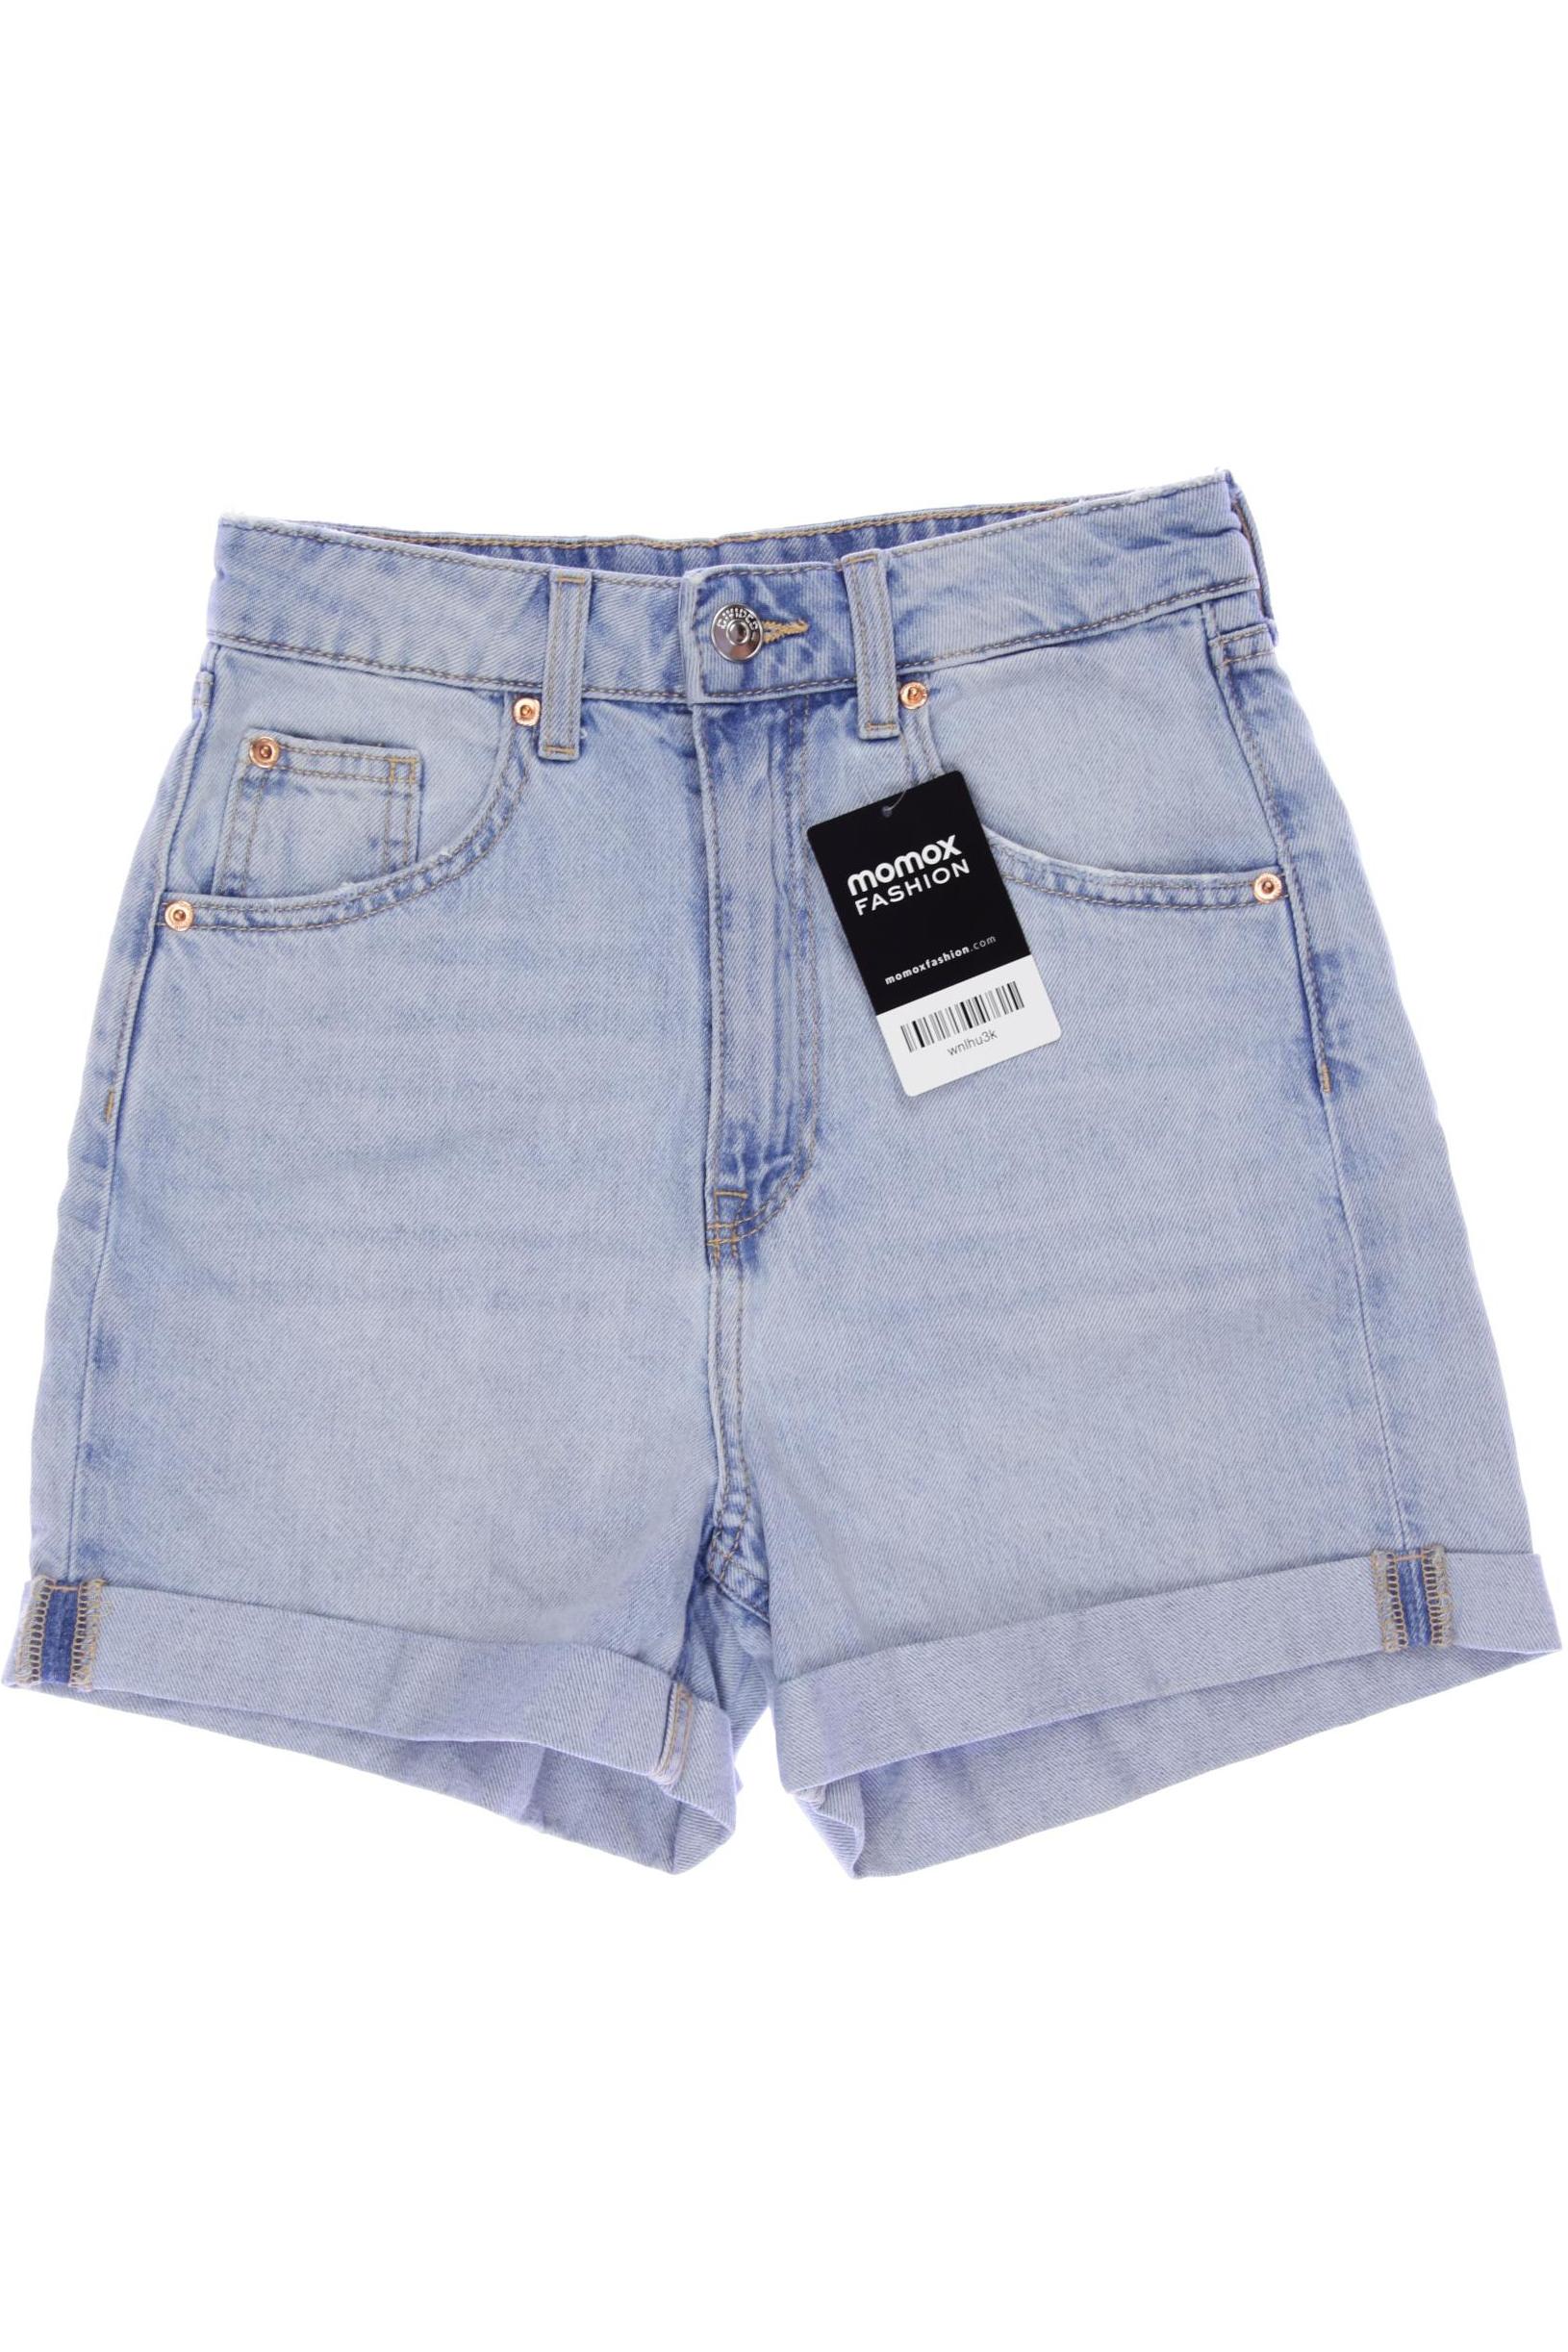 H&M Damen Shorts, hellblau, Gr. 32 von H&M